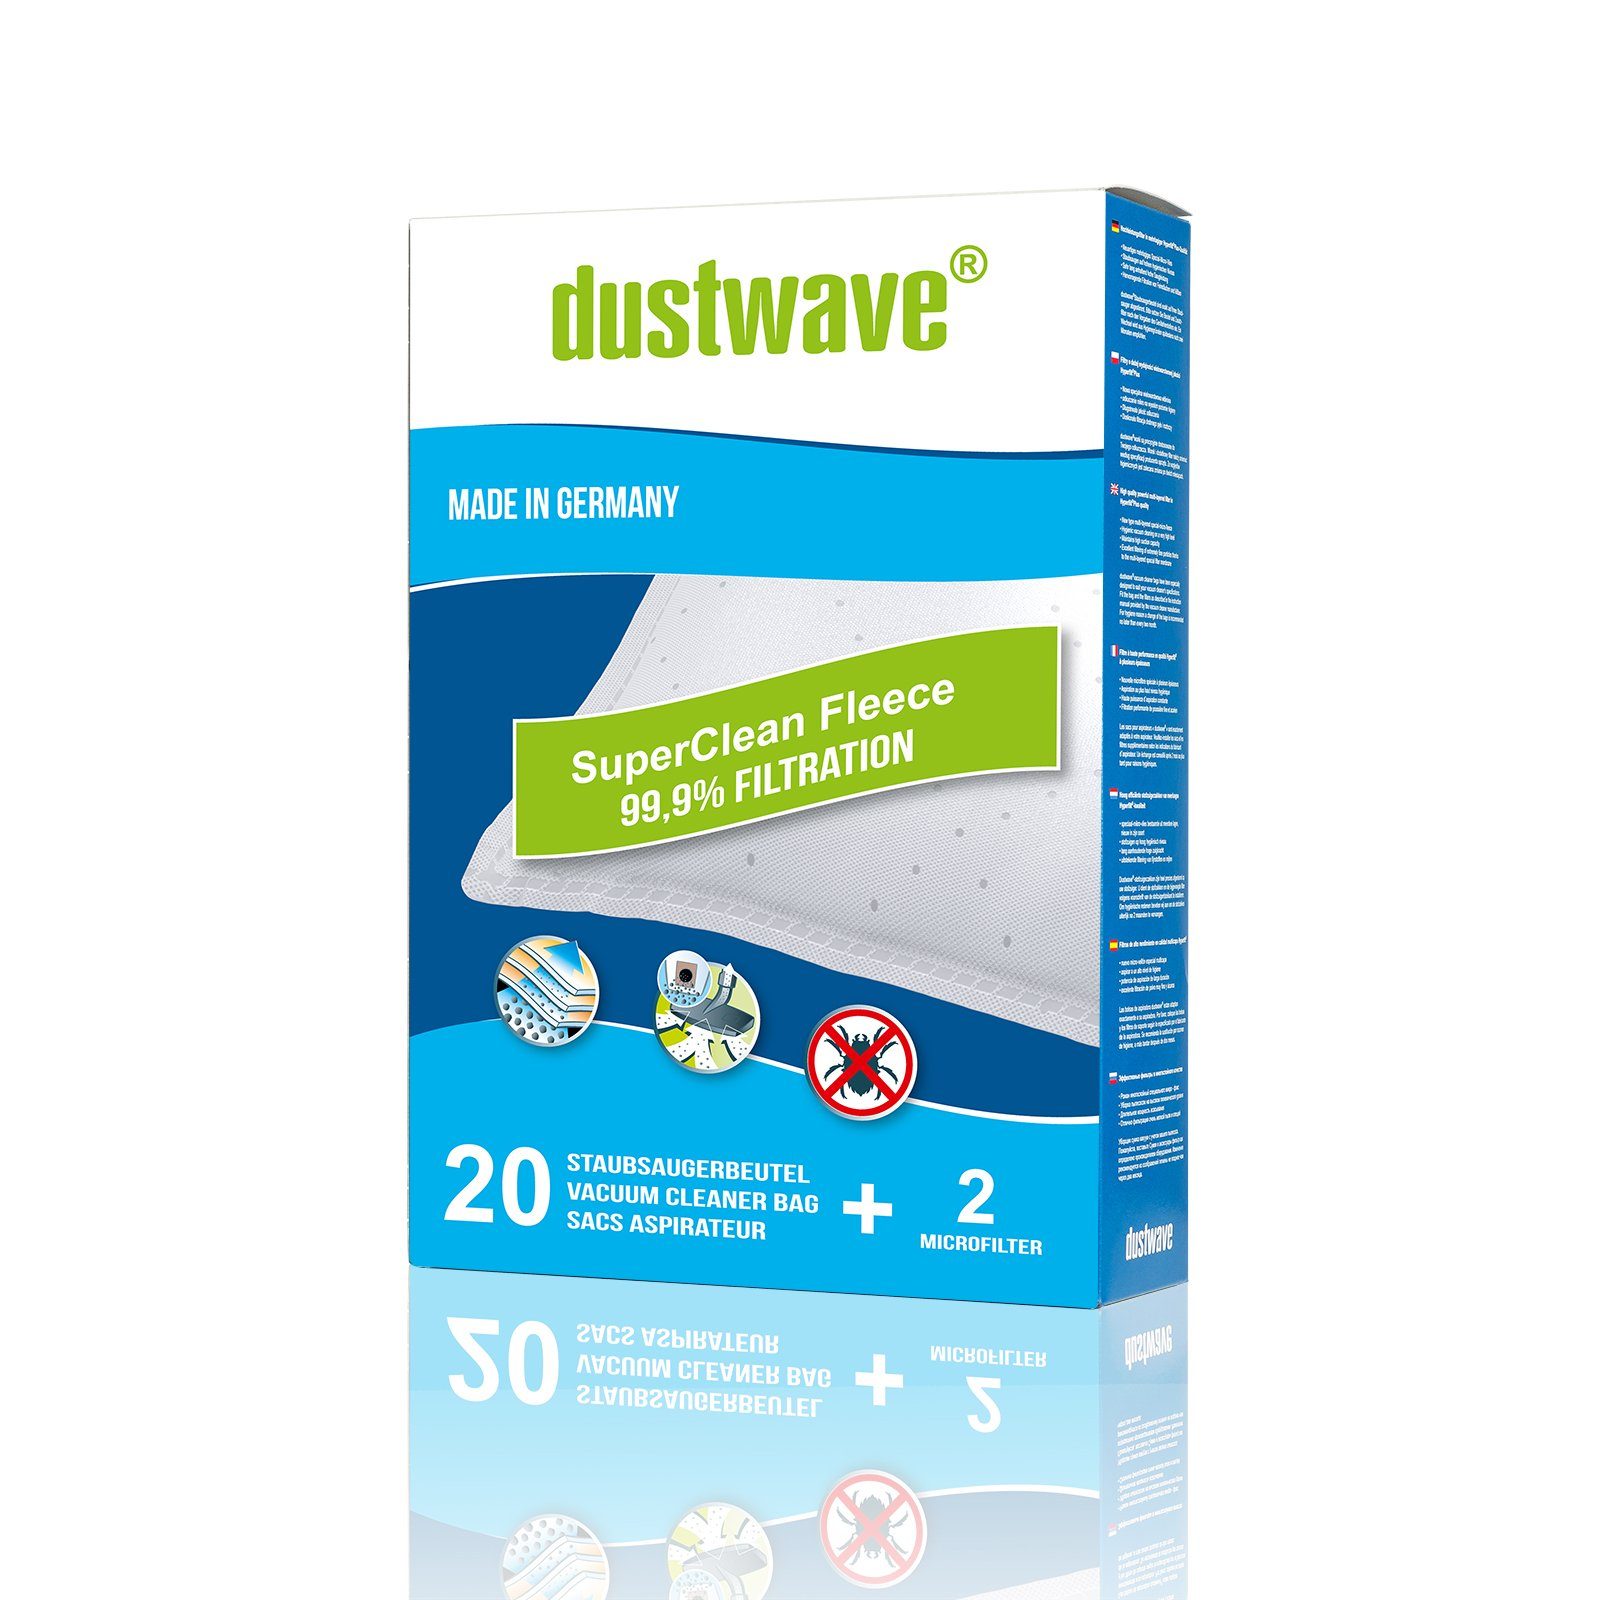 Dustwave Staubsaugerbeutel Megapack, passend für Base BA 7002, 20 St., Megapack, 20 Staubsaugerbeutel + 2 Hepa-Filter (ca. 15x15cm - zuschneidbar)